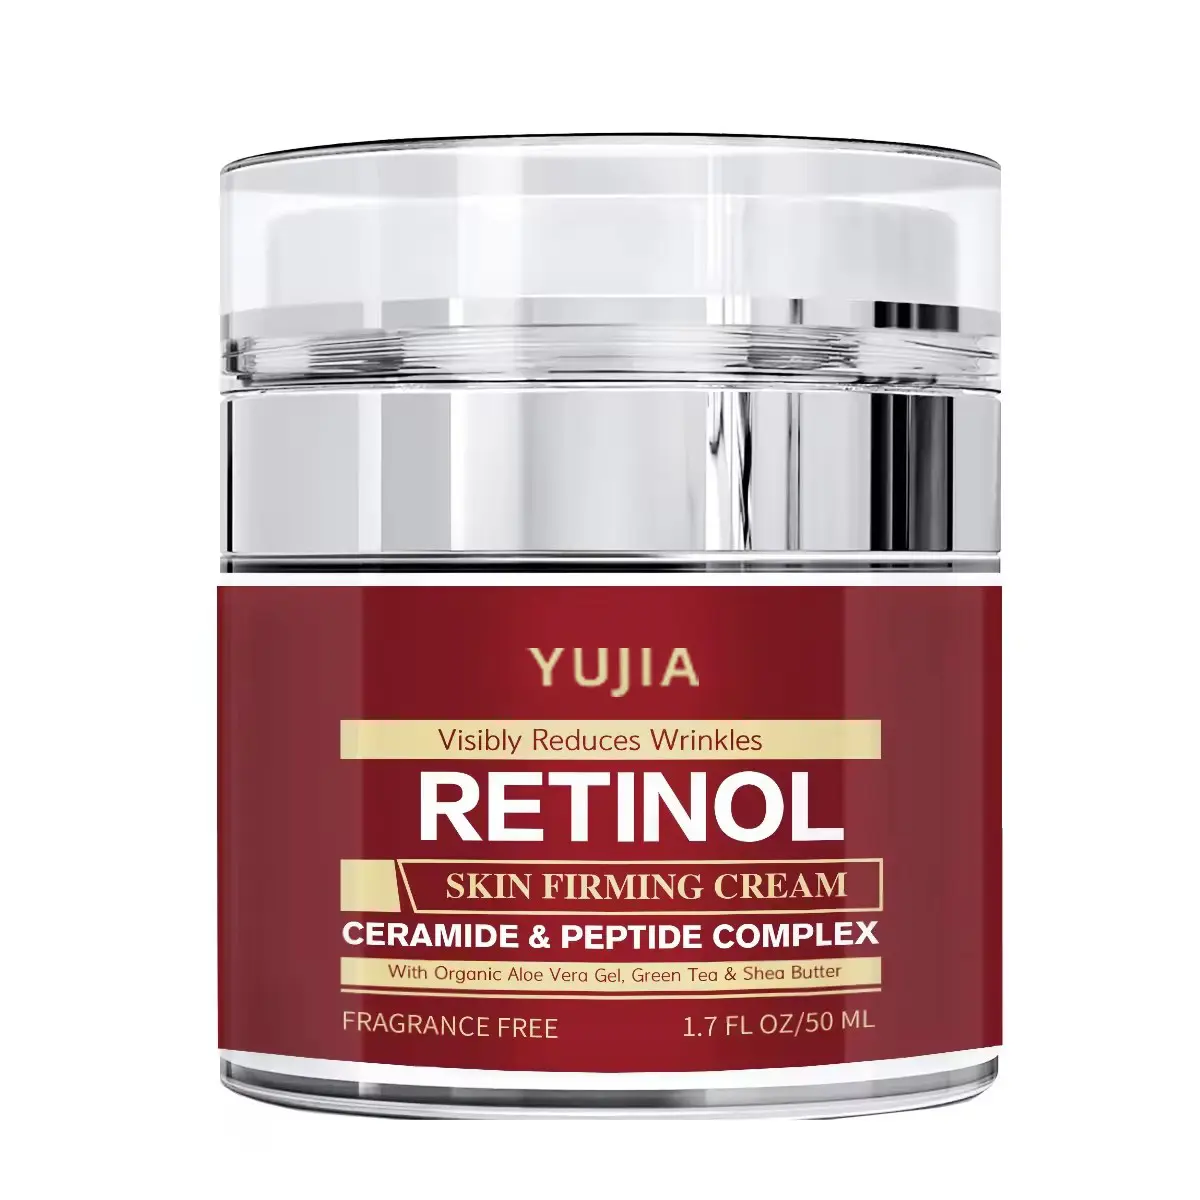 Crema notturna Yujia Retinol per la cura della pelle luminosa, Anti invecchiamento e sbiancamento, Private Label disponibile crema per lo sbiancamento del viso notte